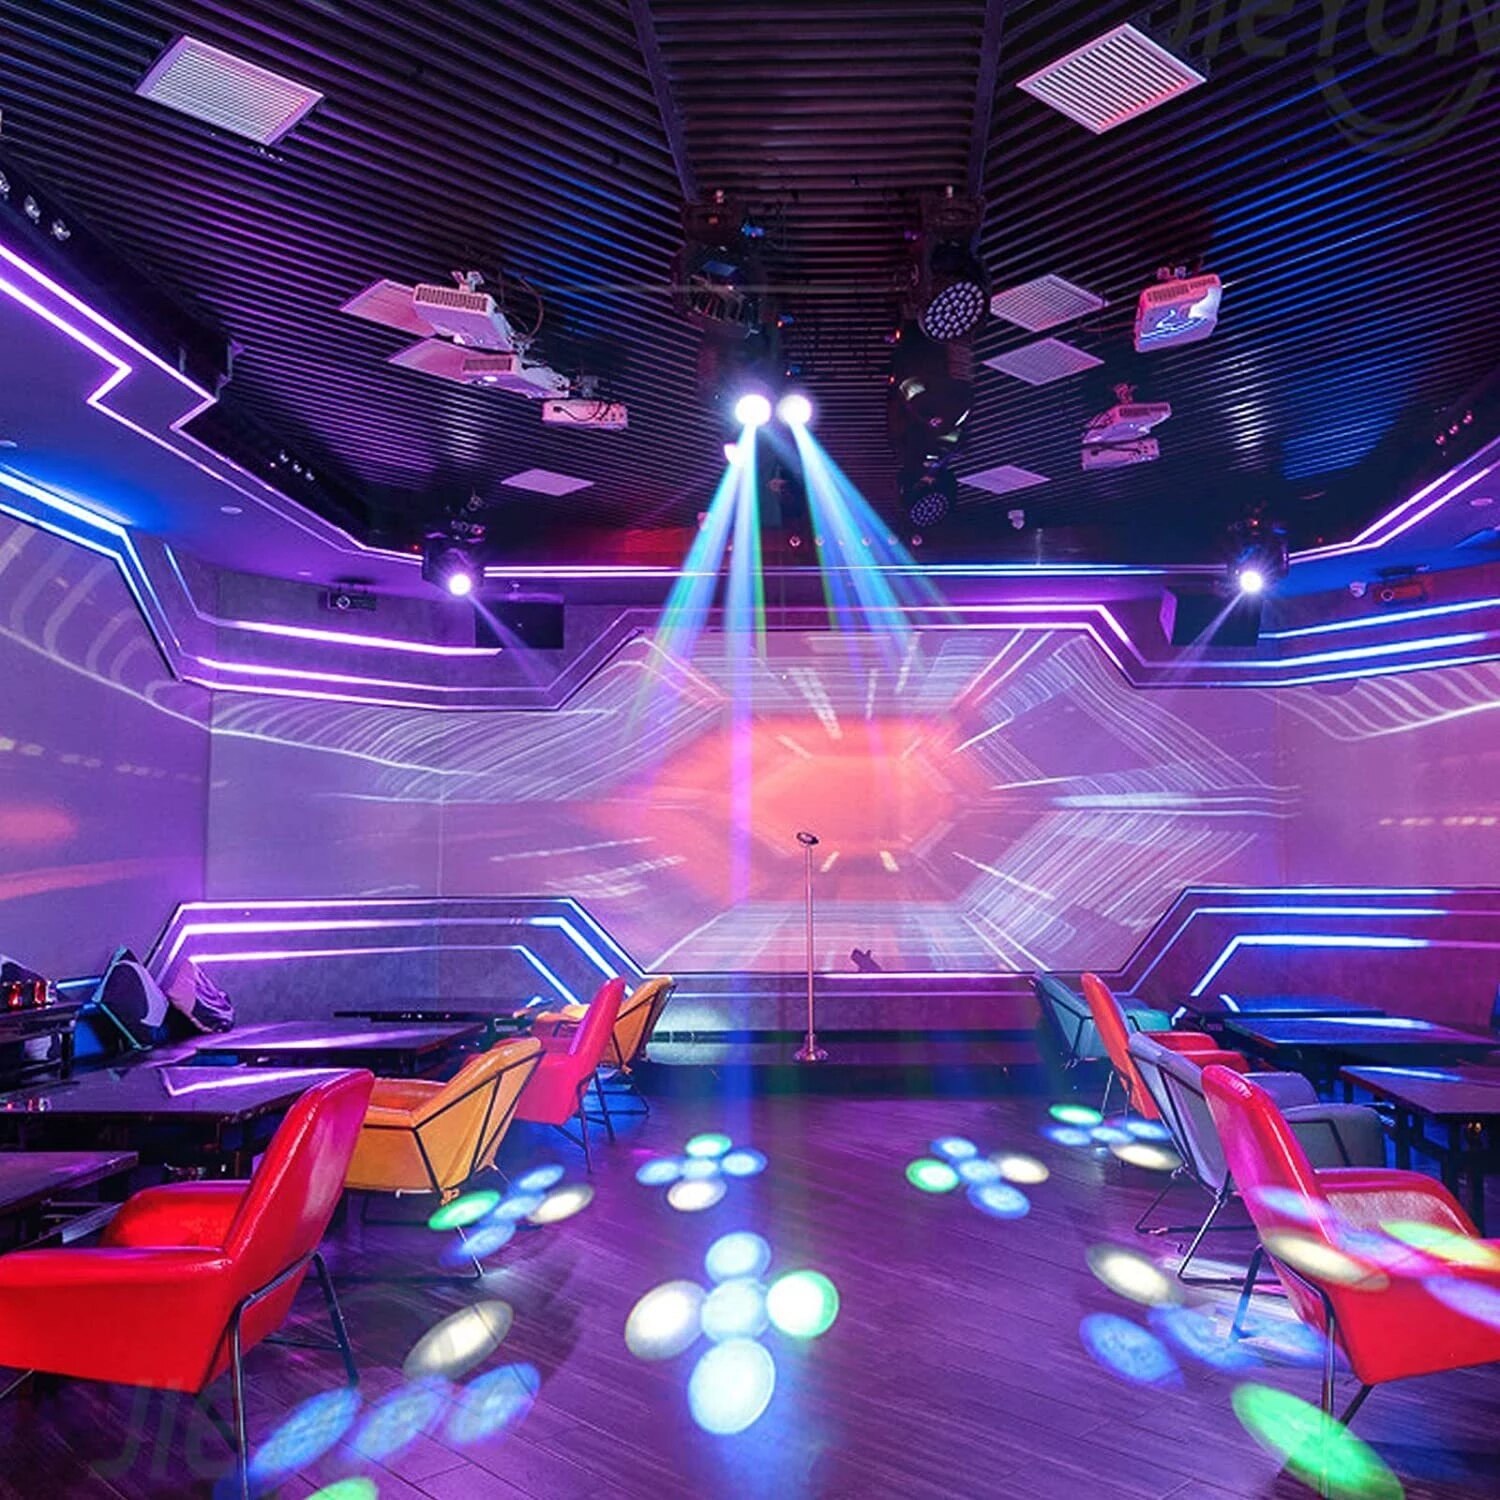 Led Dubbele Hoofd Disco Lamp Spotlight Kleurrijke Dj Party Light Projector Stadium Effect Voor Home Entertainment Wedding Xmas Verlichting